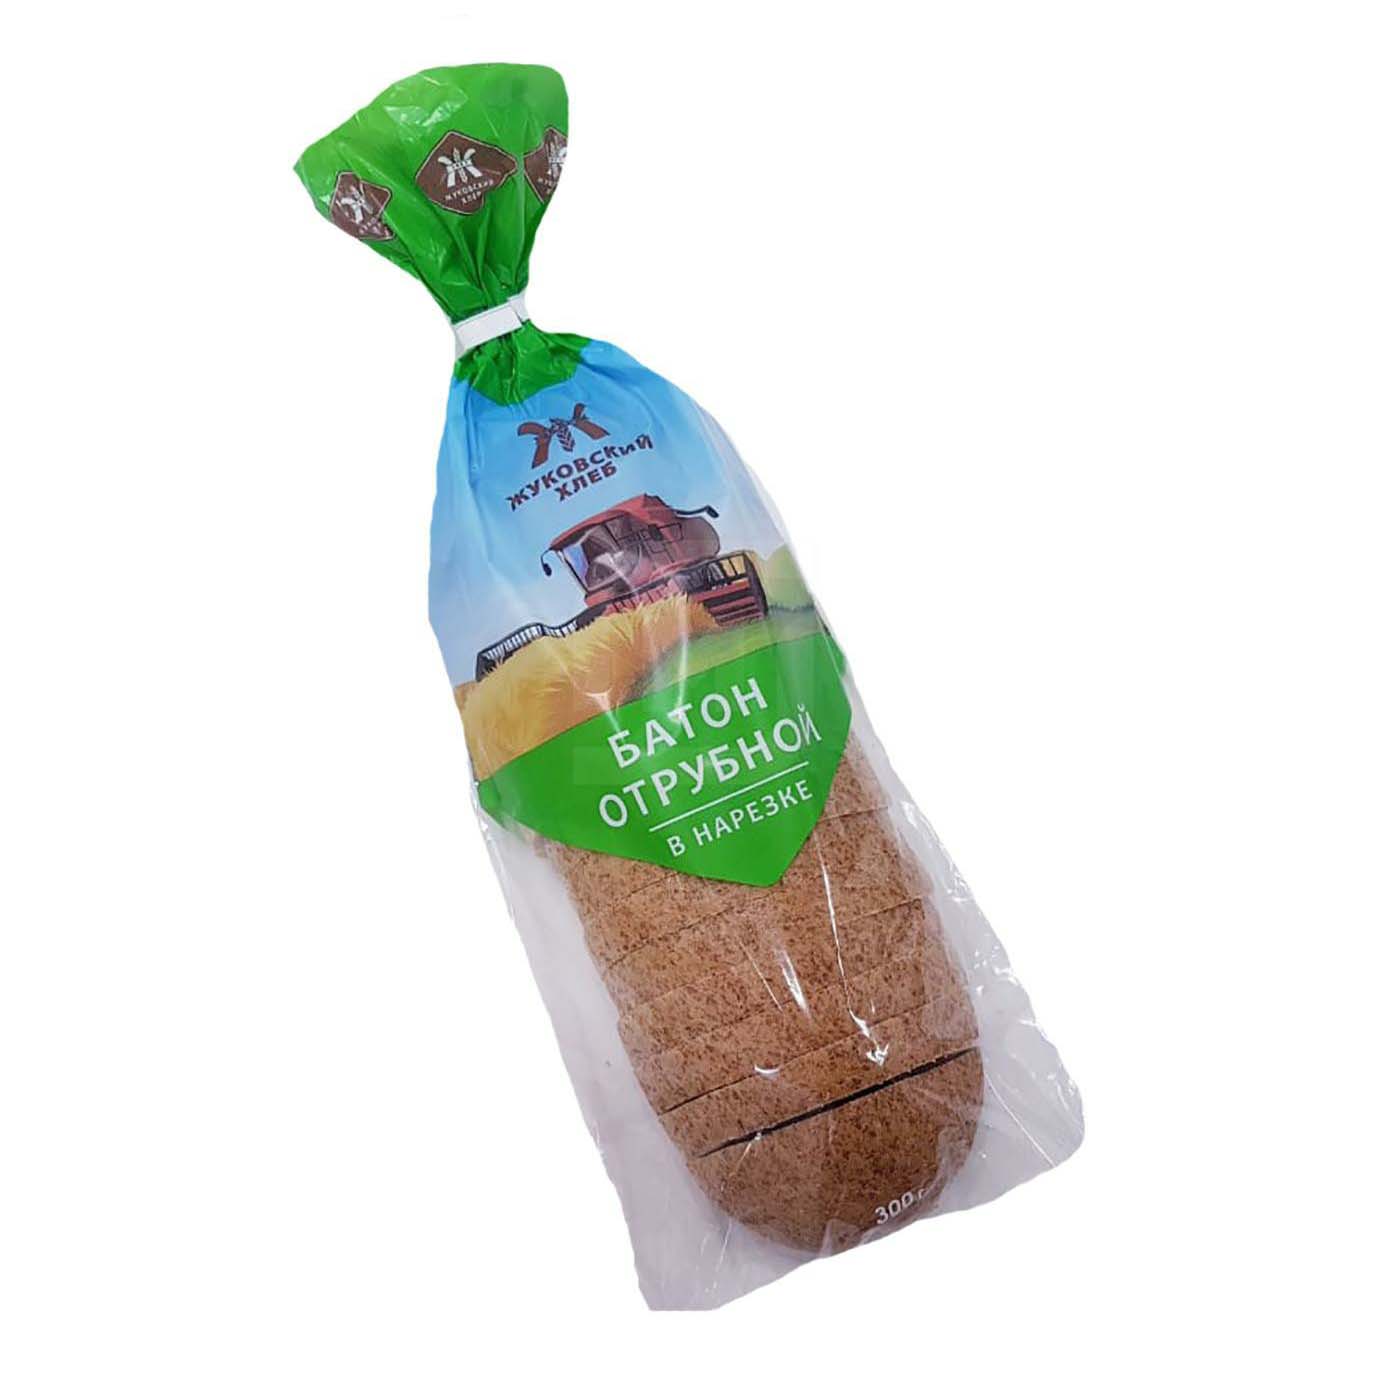 Хлеб Жуковский хлеб Отрубной батон пшеничный нарезанный 300 г